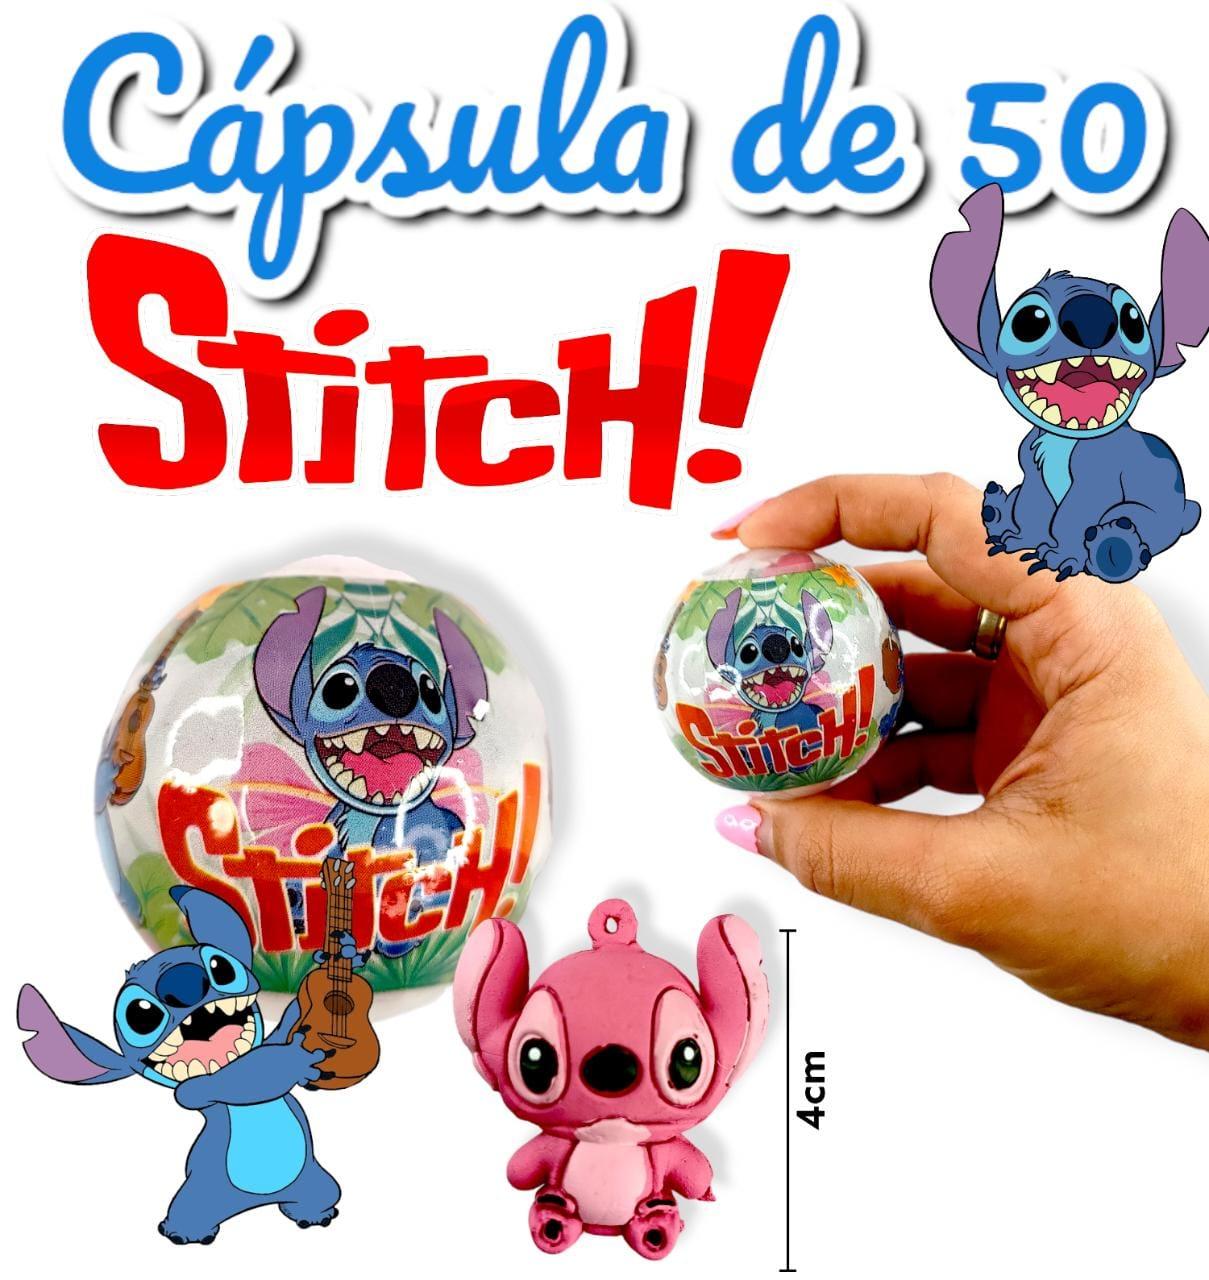 Capsula de 50 Stitch + Minitoy 4cm